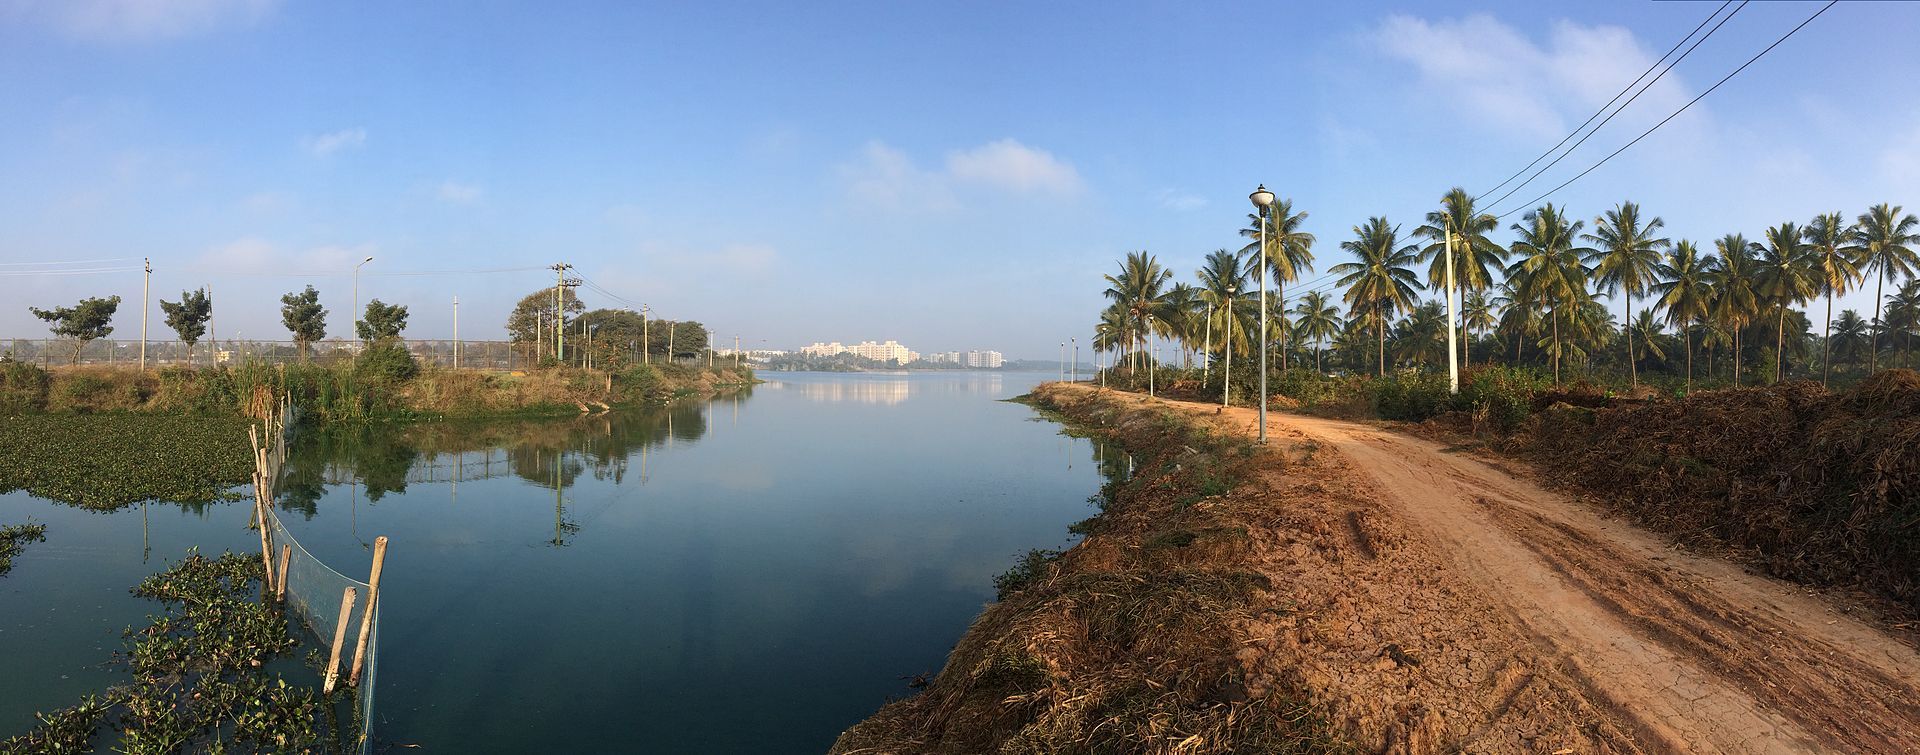 अब तो झील और कुएं ही बचा पाएंगे बेंगलुरु को!